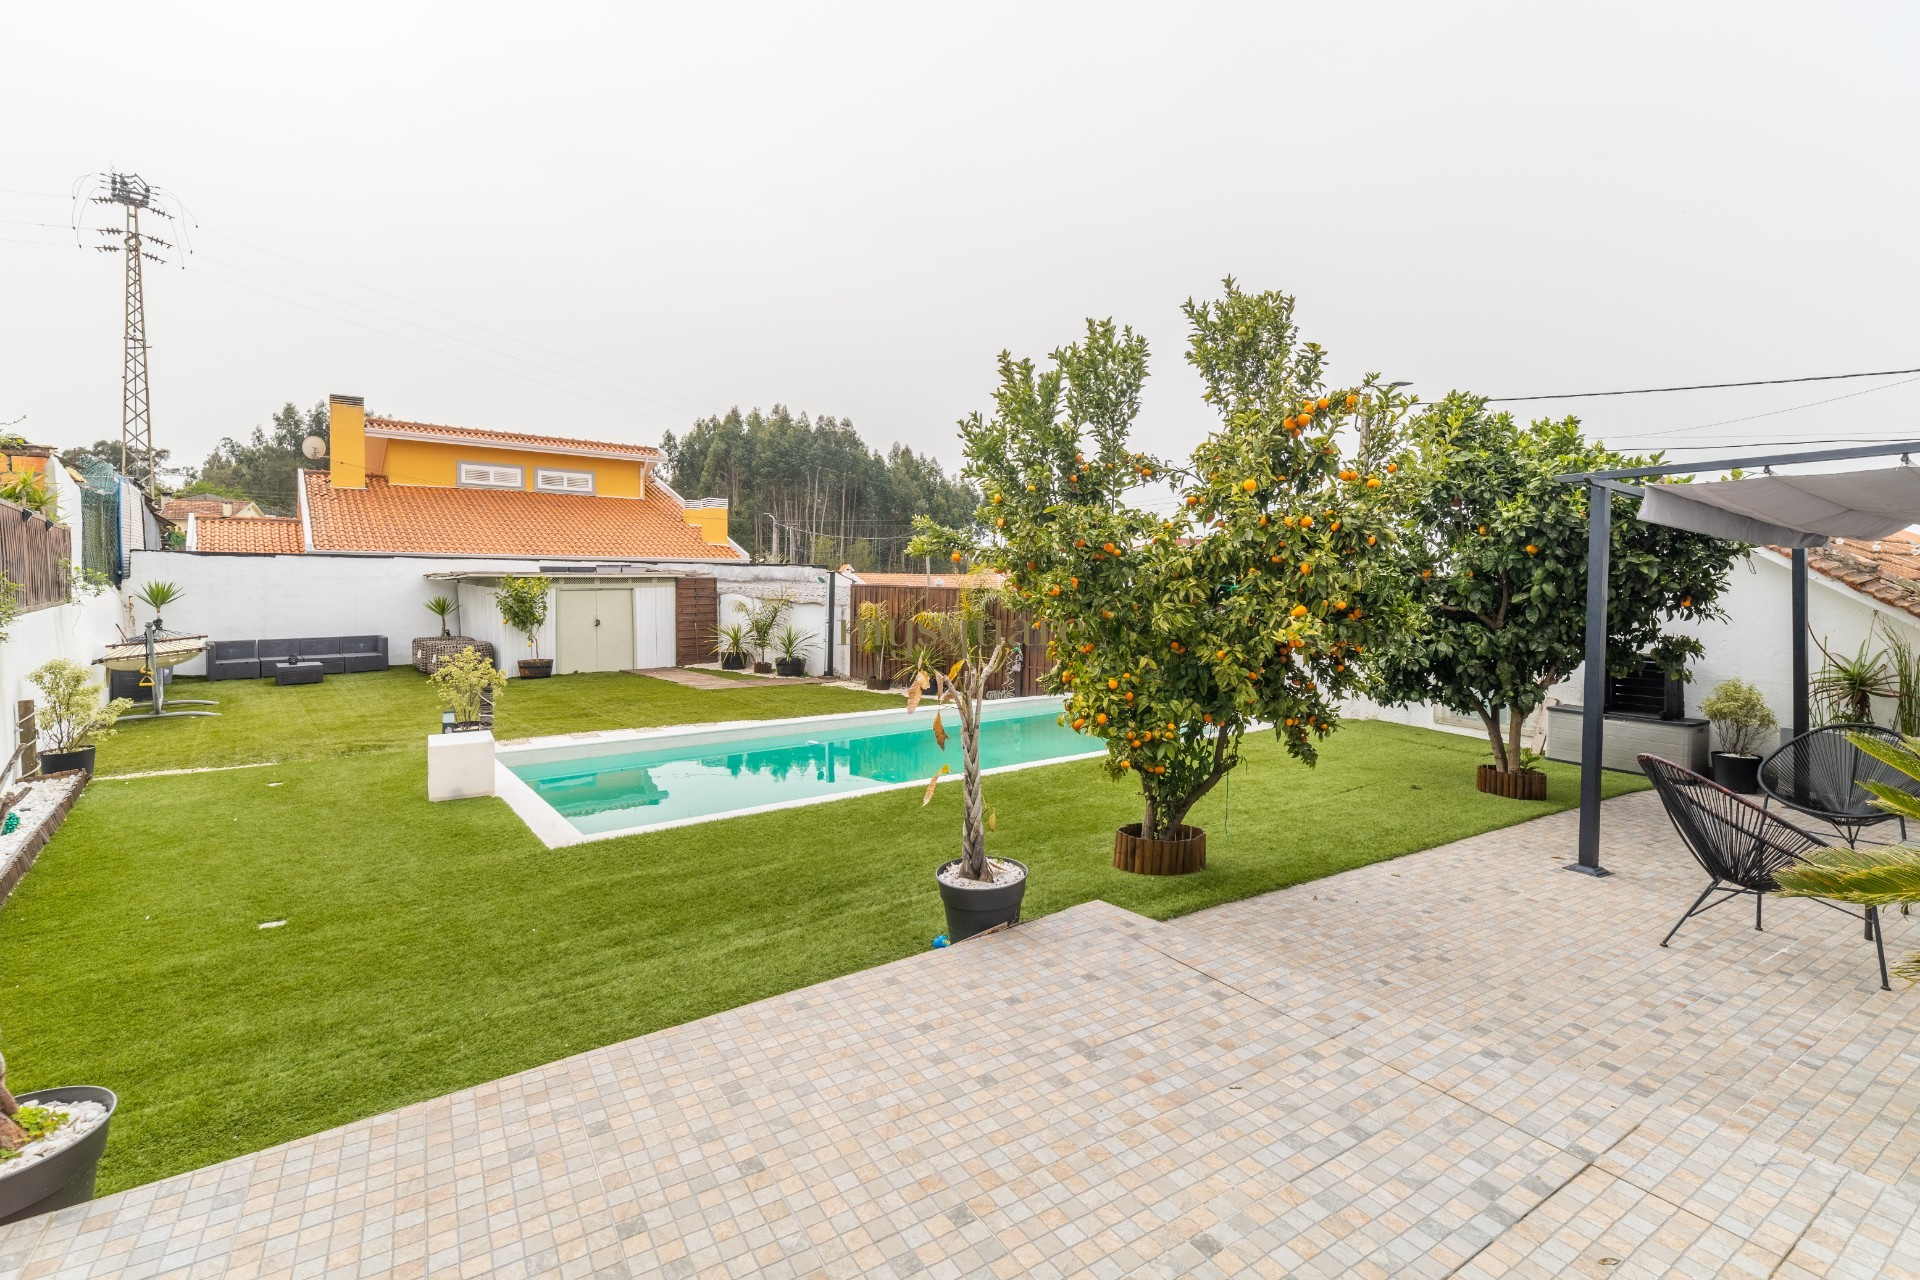 Villa independiente de 3 dormitorios con piscina - Seixezelo, Vila Nova de Gaia